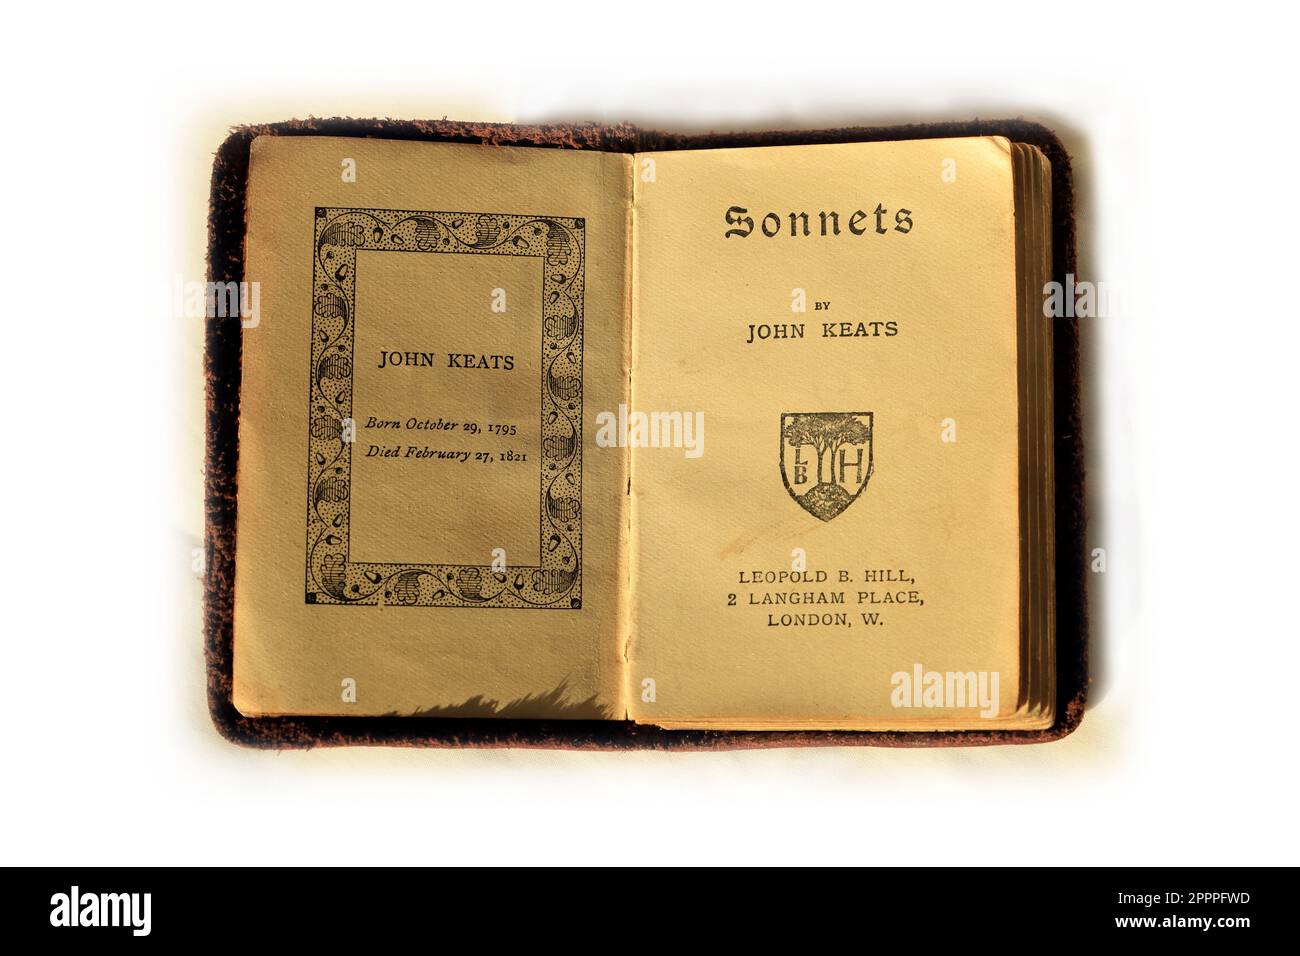 Kleines Buch vor weißem Hintergrund - Sonnets von John Keats. Stockfoto